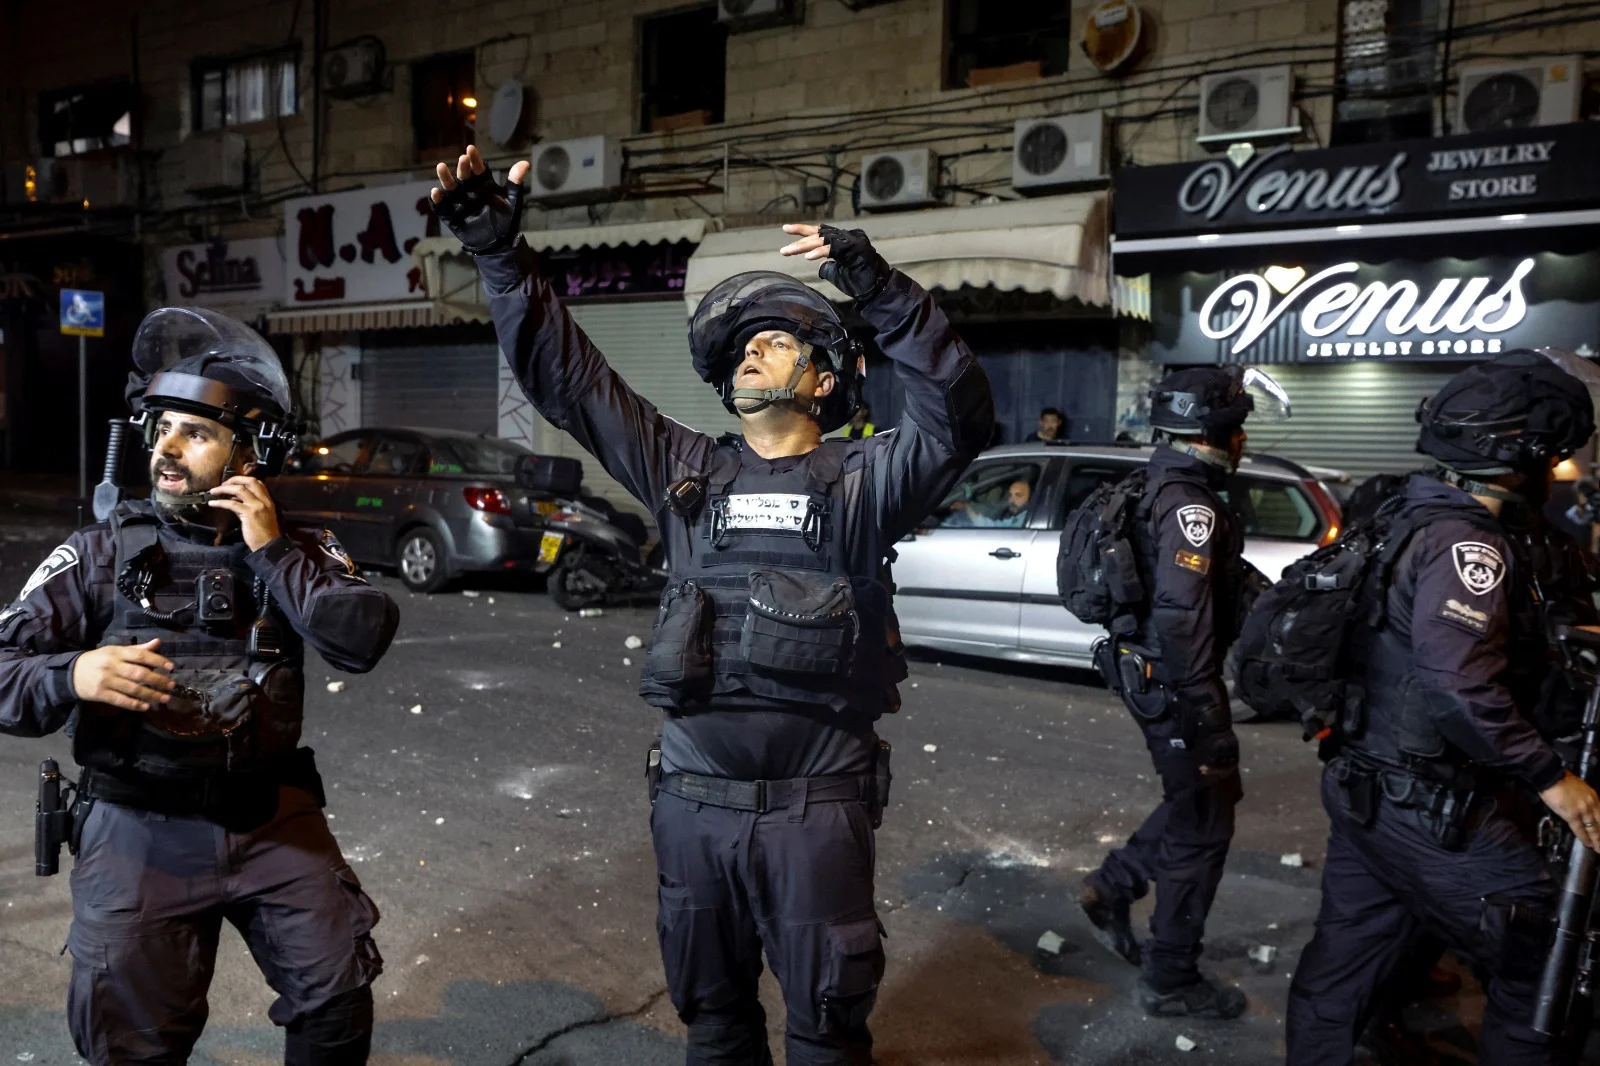 עימותים בין פלסטינים לשוטרים במזרח ירושלים